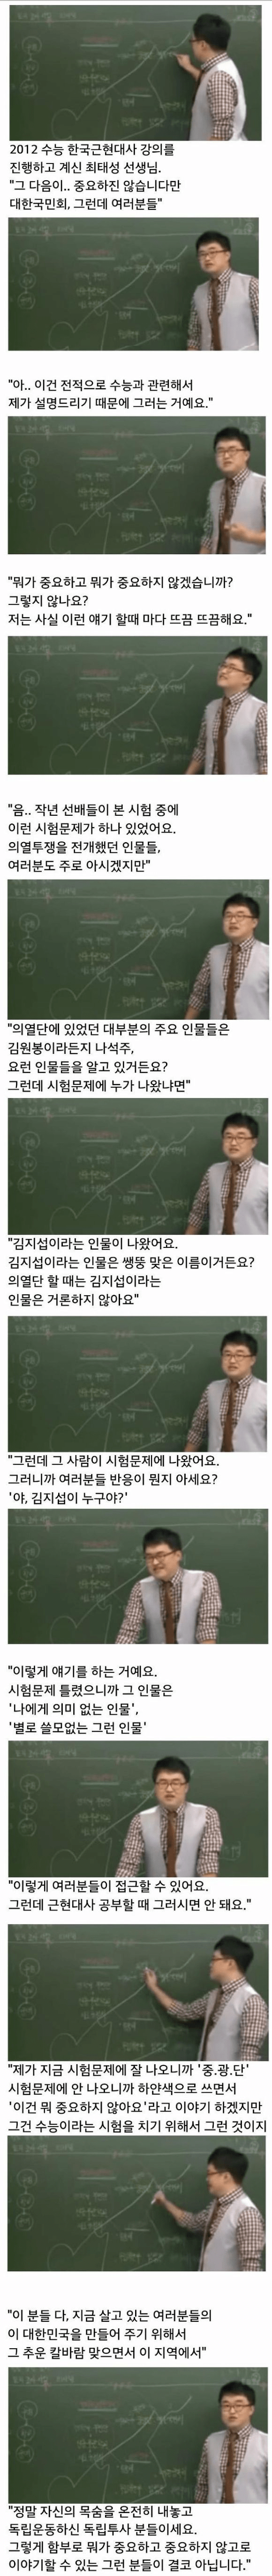 講義するたびにドキッとする韓国史講師jpg